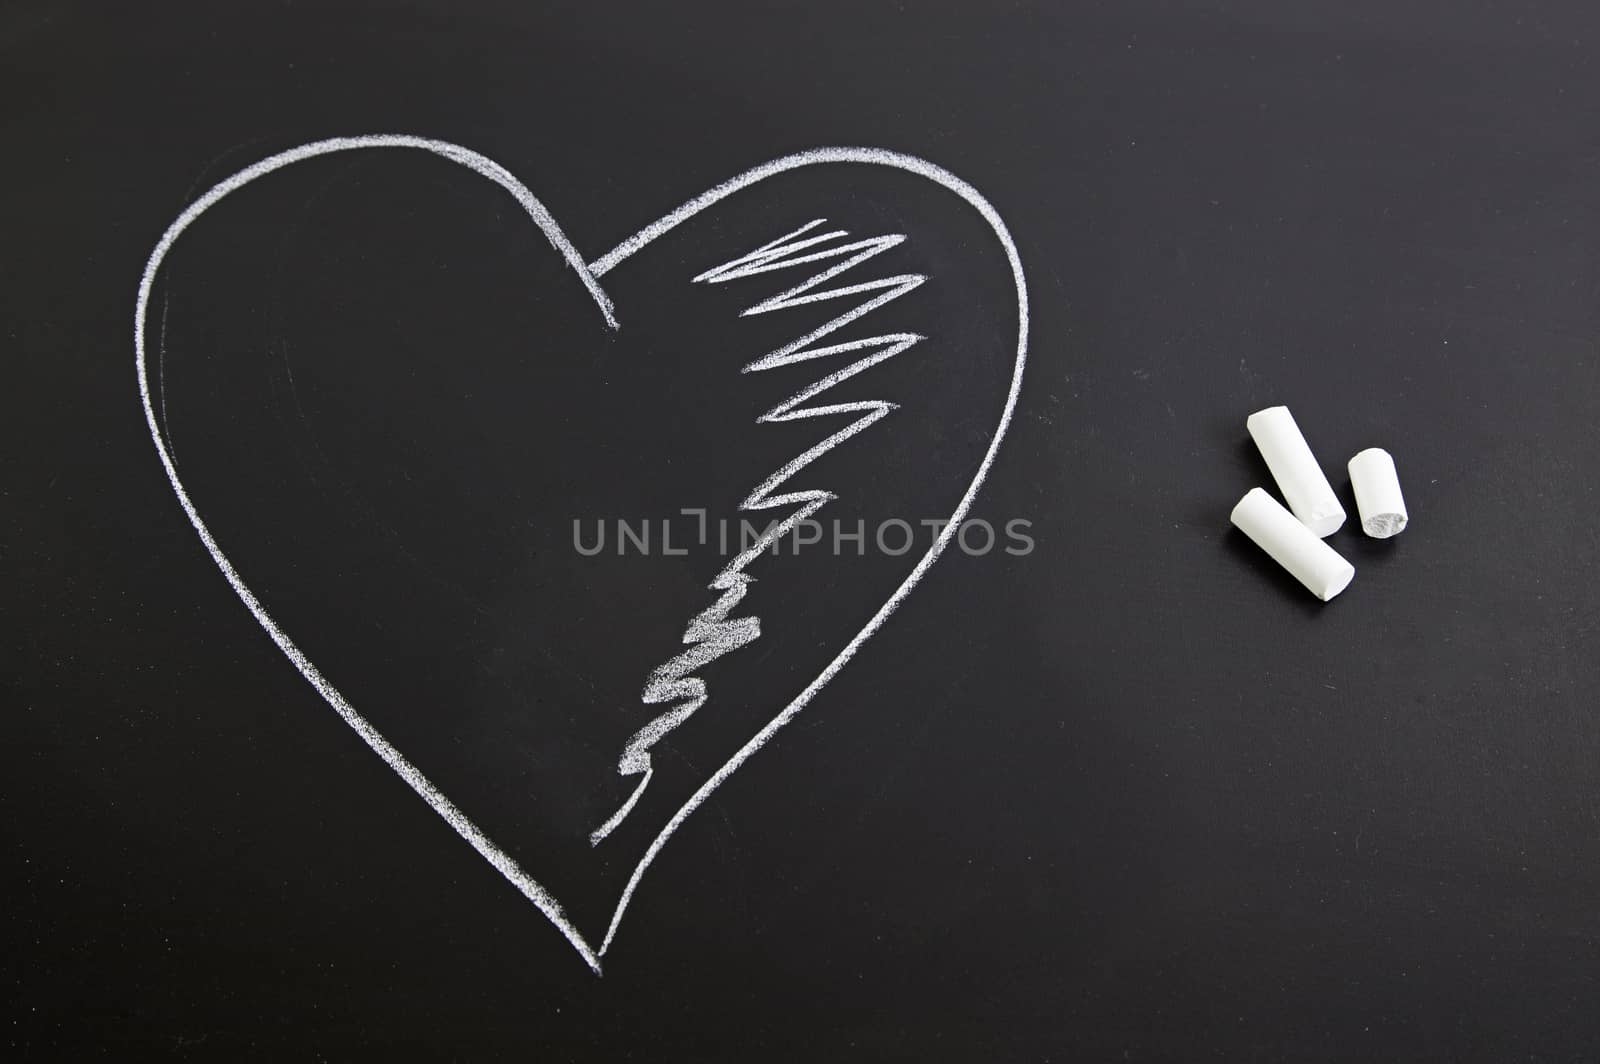 Romantic heart on the blackboard by esebene